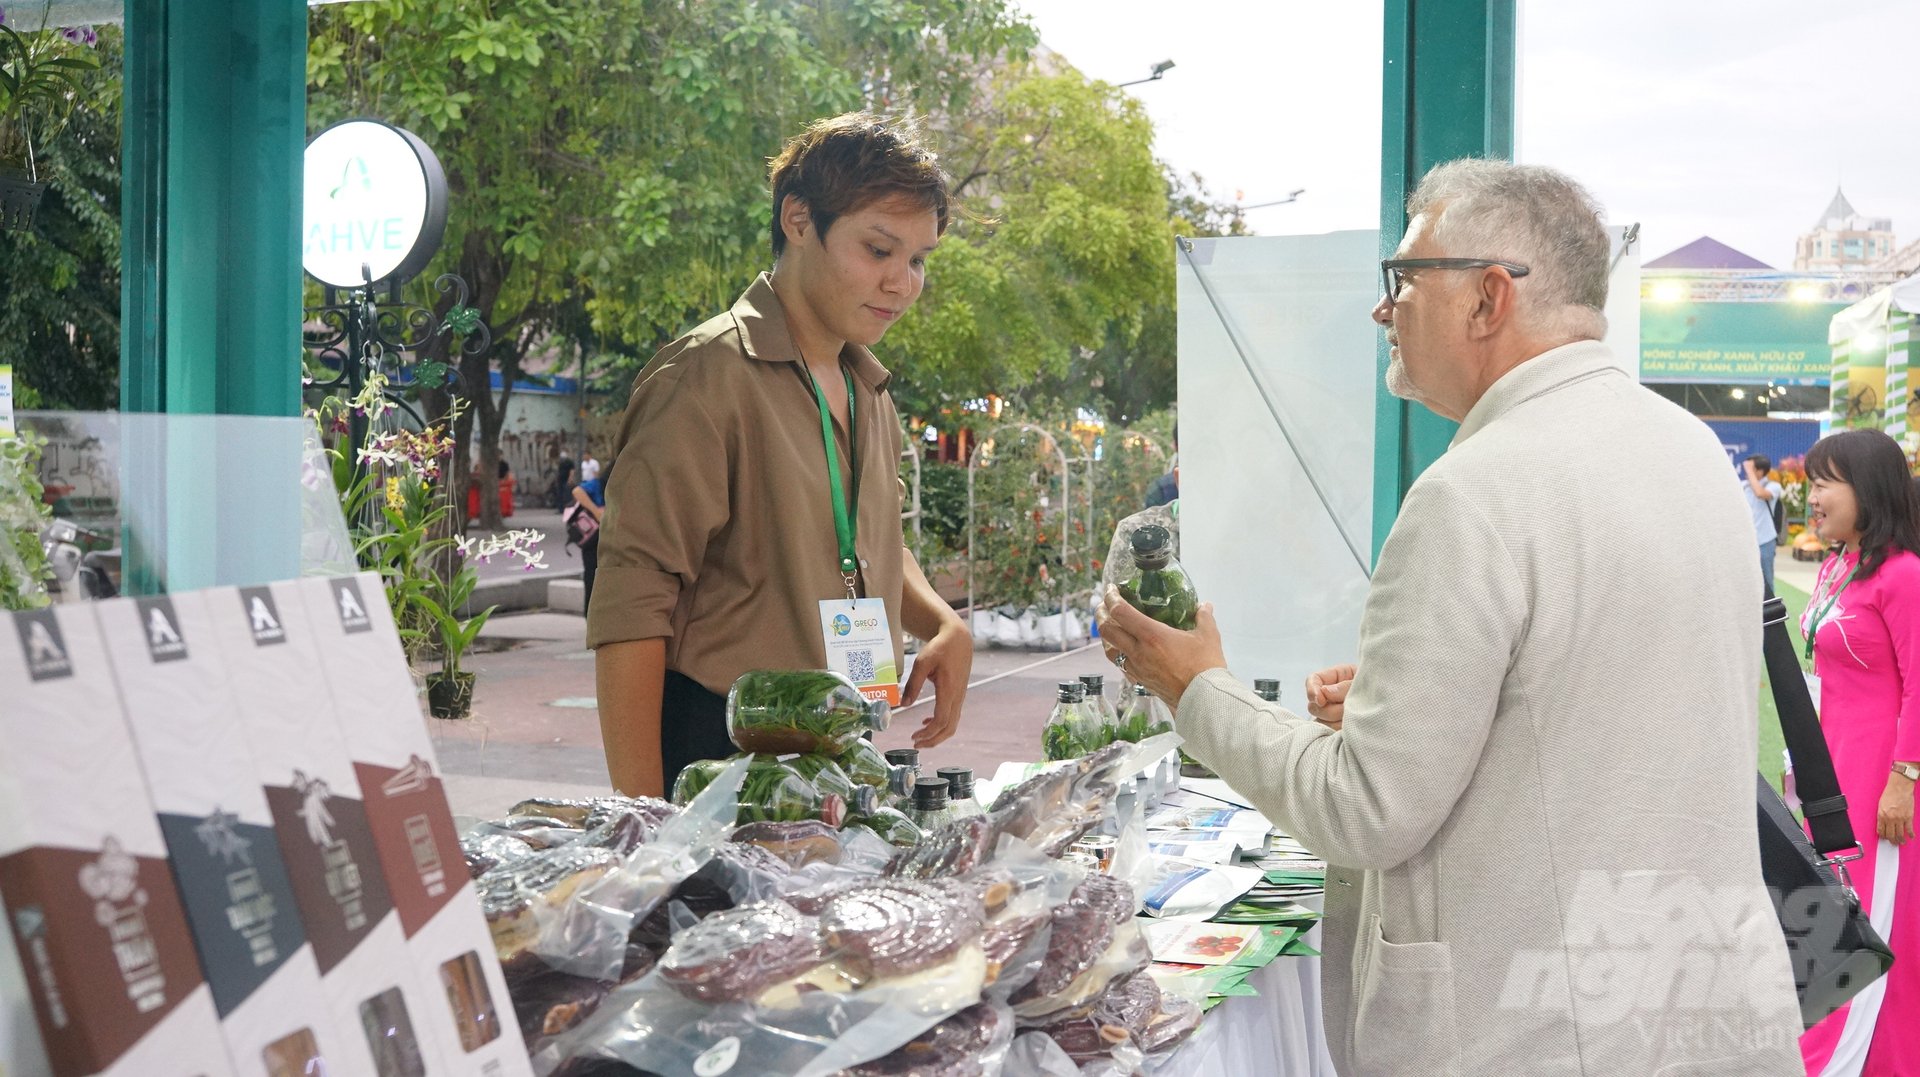 Các nhà mua hàng quốc tế tìm hiểu về các sản phẩm nông nghiệp của TP.HCM. Ảnh: Nguyễn Thủy.